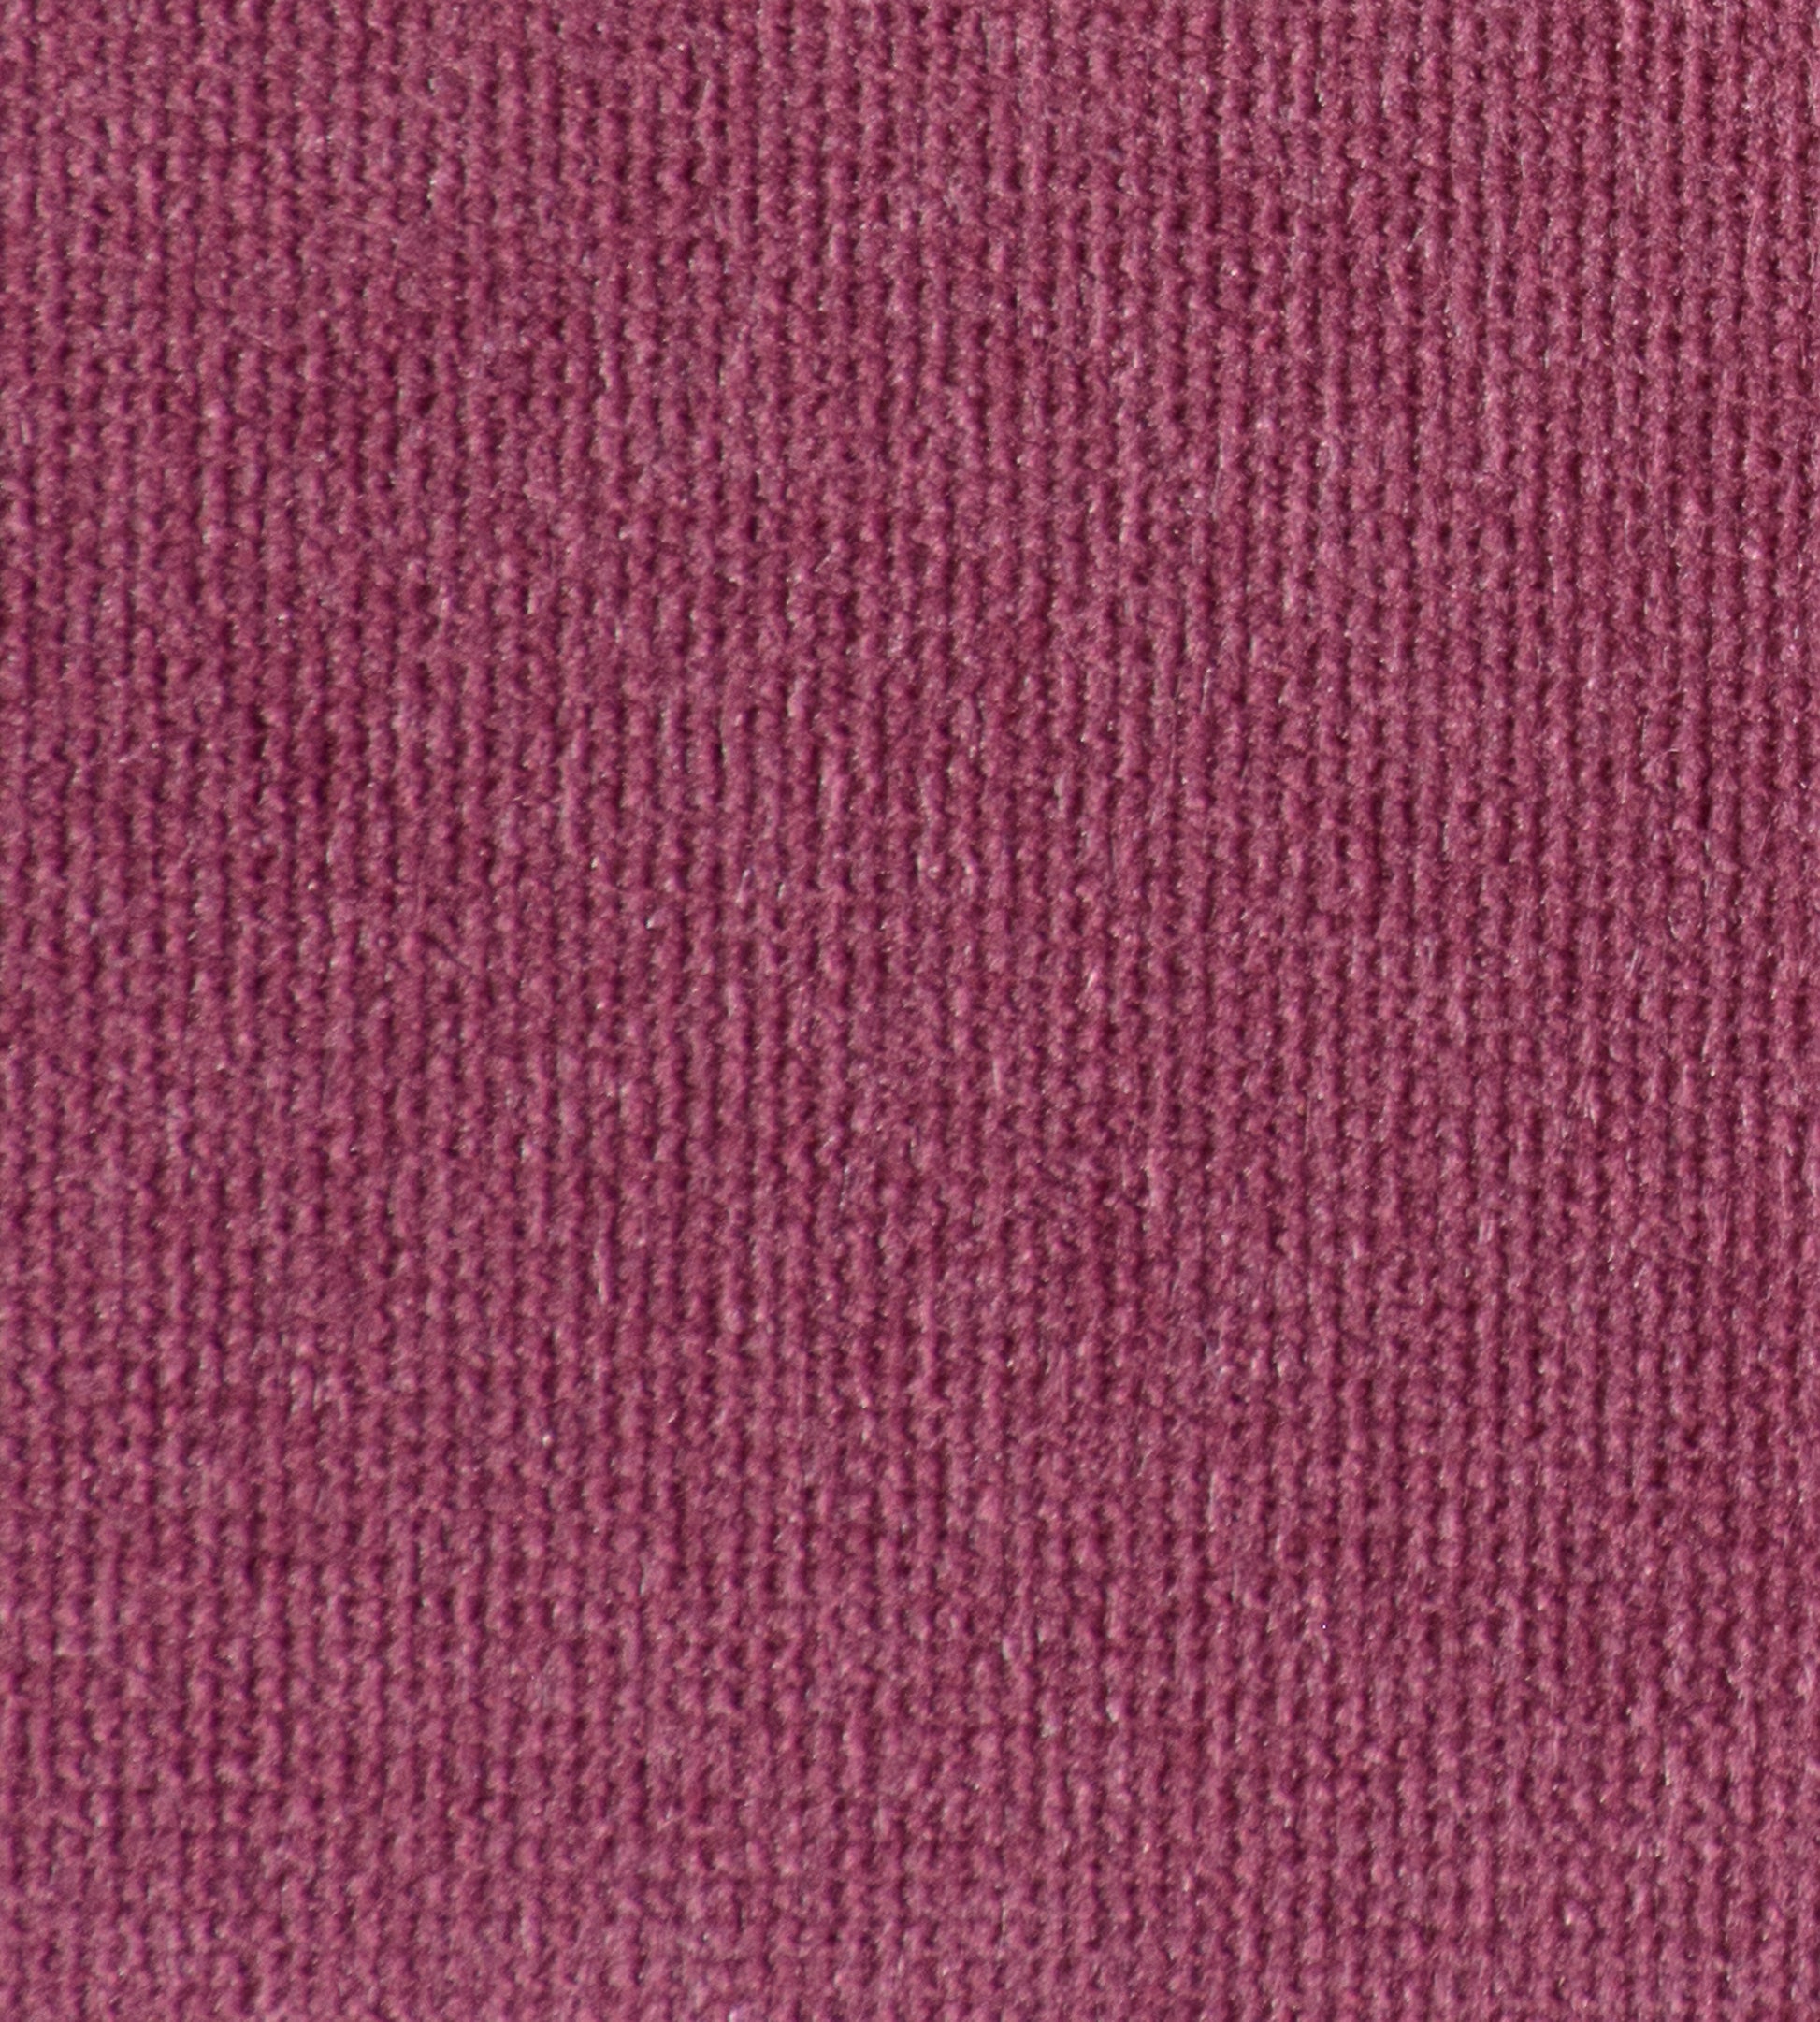 Purchase Old World Weavers Fabric Item# VP 0877GLAM, Glamour Velvet Plum 1